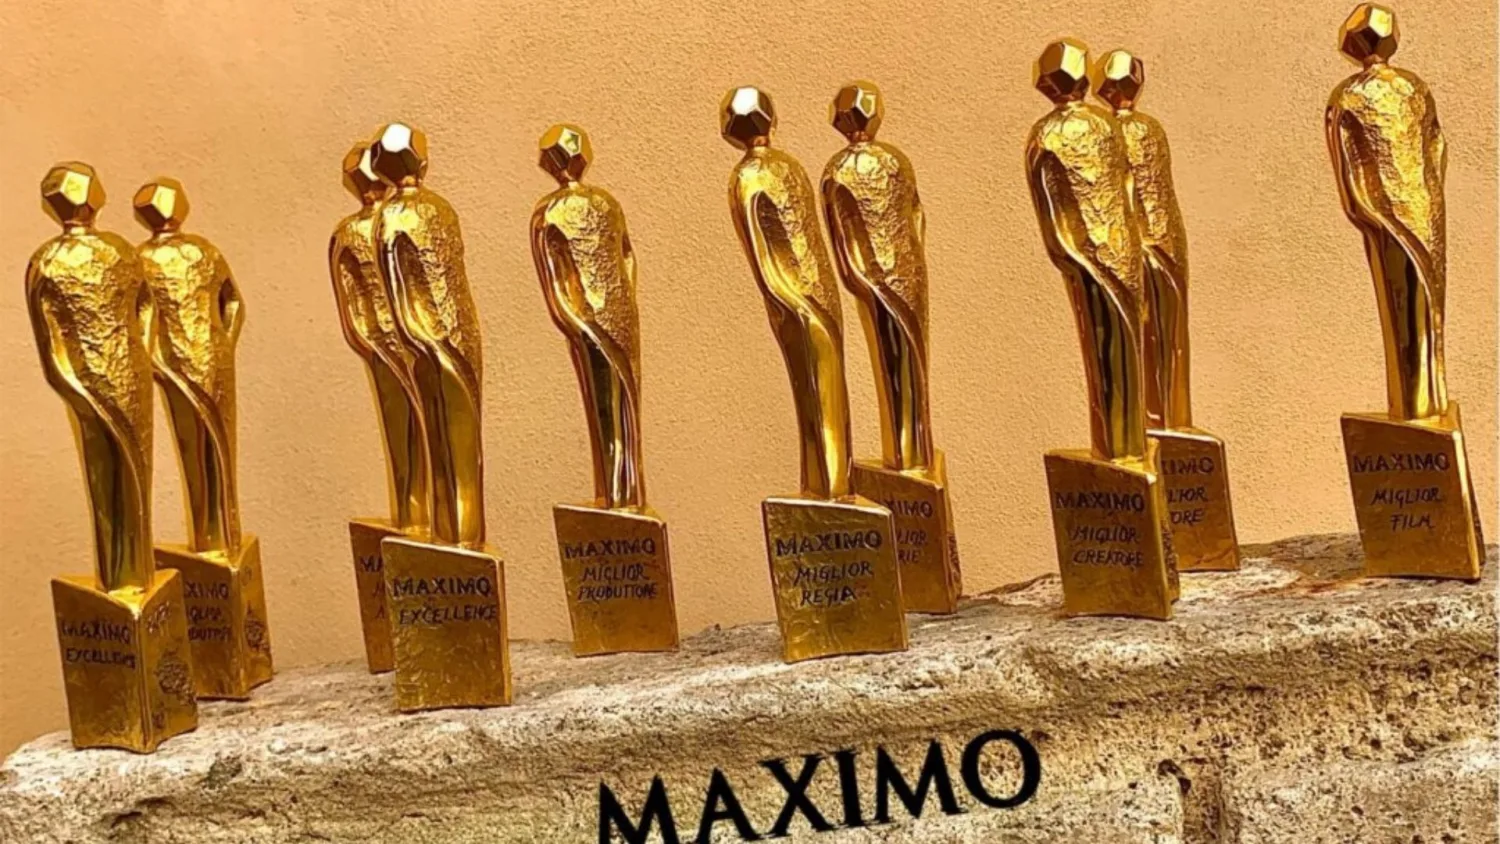 Premi Maximo, Roberto Sessa miglior produttore per Mare Fuori e Lidia Poët miglior serie